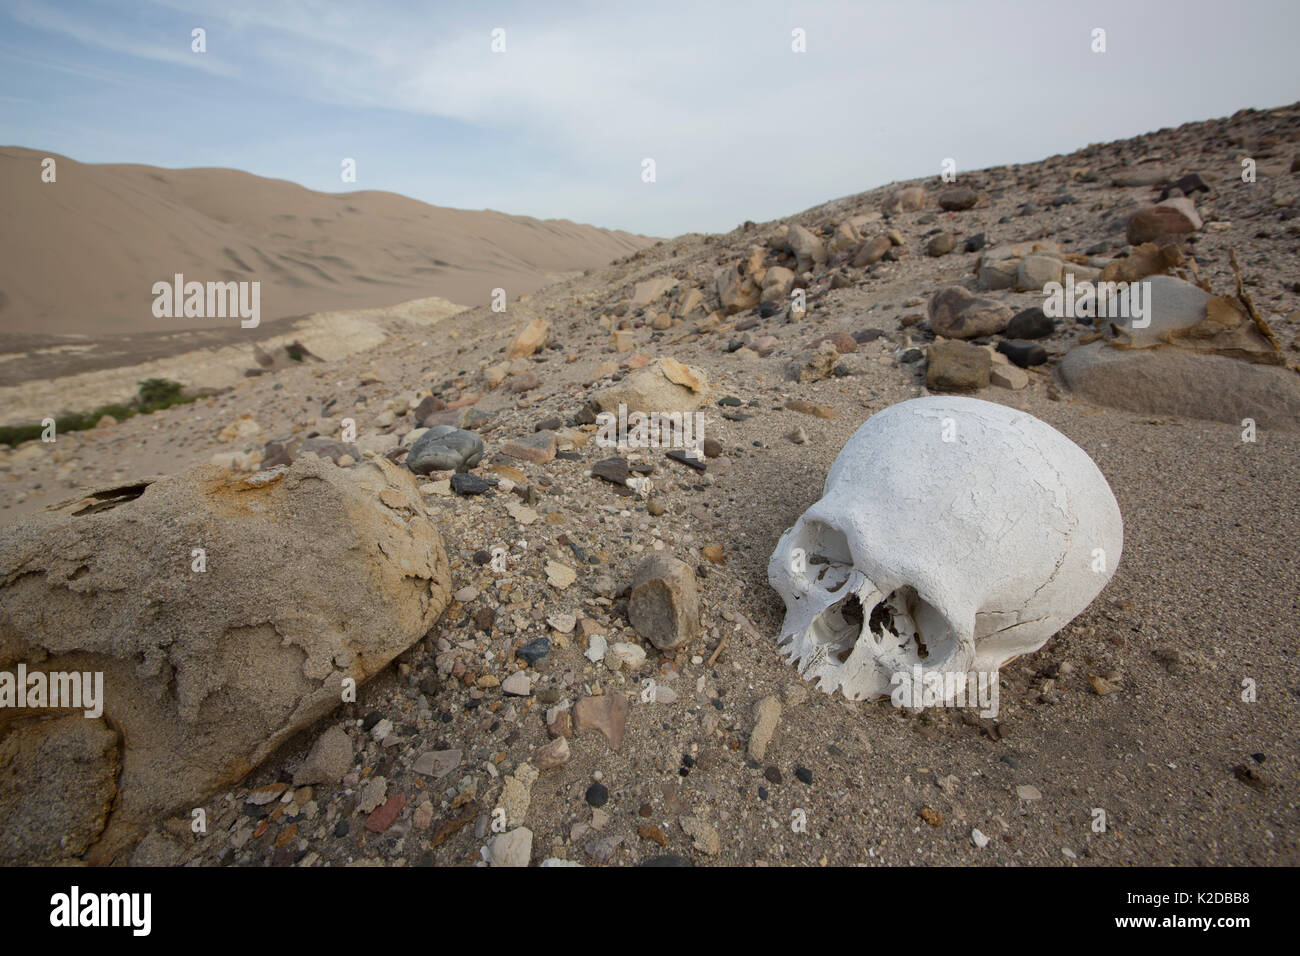 Menschlicher Schädel ausgesetzt, wo ein Prä-inka Grabstätte geplündert wurde, Poroma Tal, Peru 2013 Stockfoto